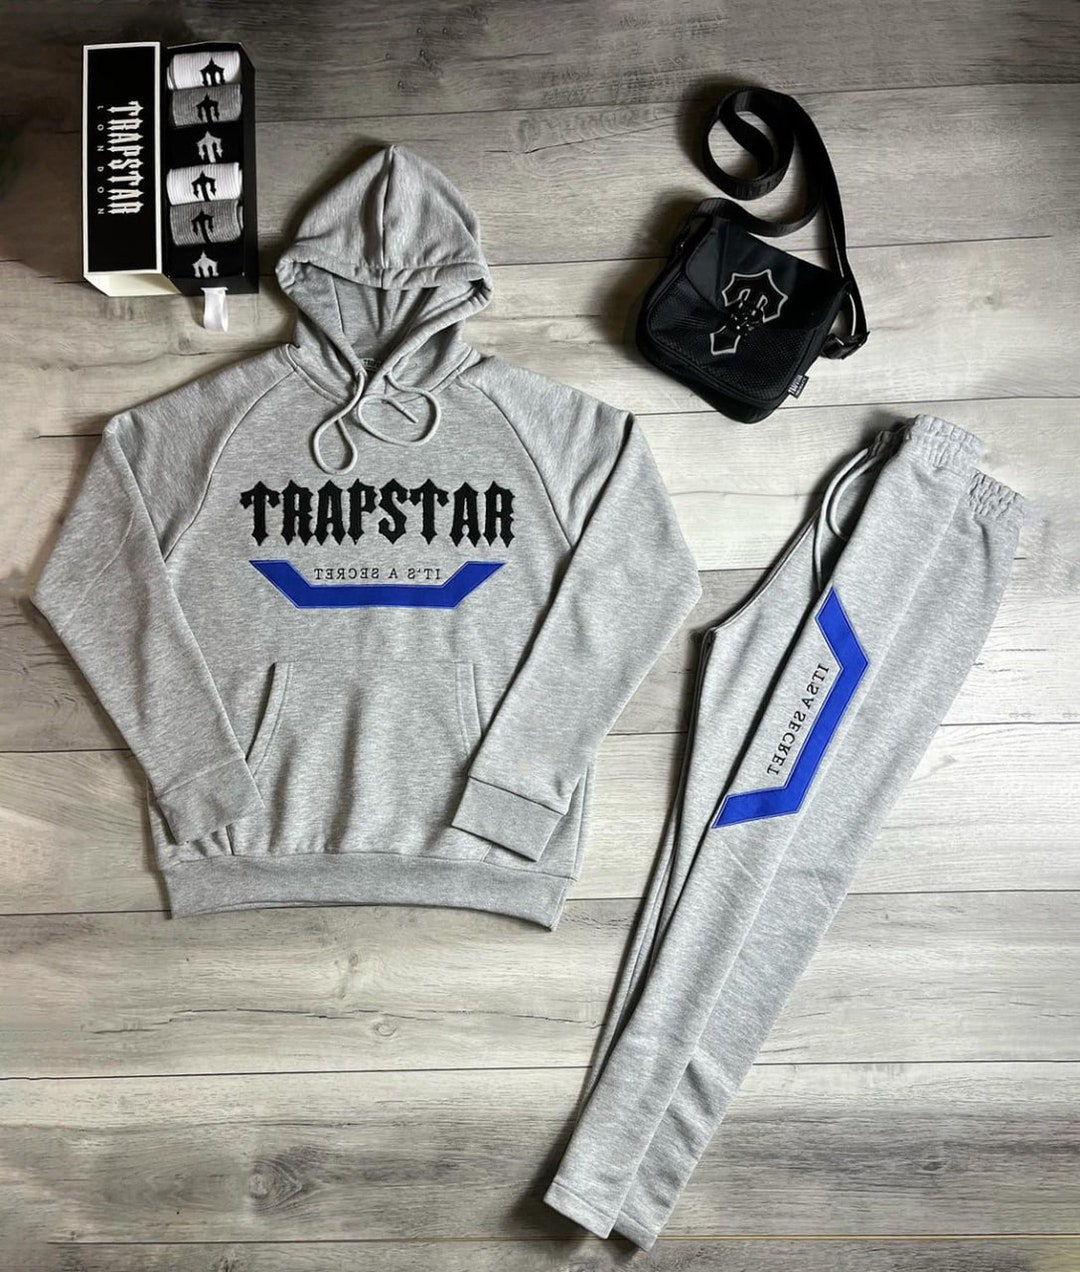 Trapstar Irongate T Cross Body Bag “ bolsa ” Peru